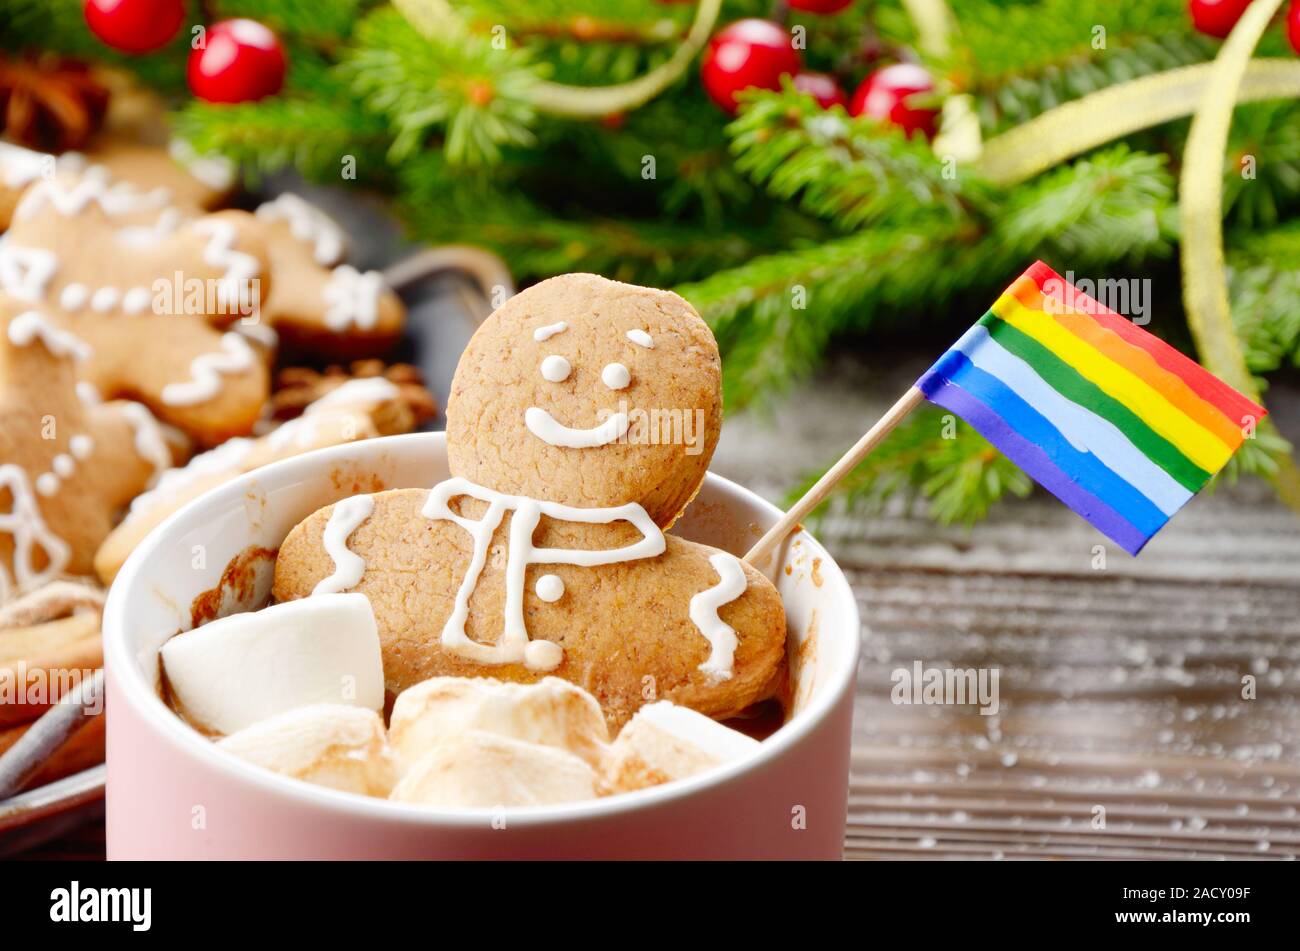 Rosa la tazza con il cioccolato caldo marshmallows e gingerbread man con bandiera arcobaleno sullo sfondo del ramo di abete e il vassoio con i cookie Foto Stock